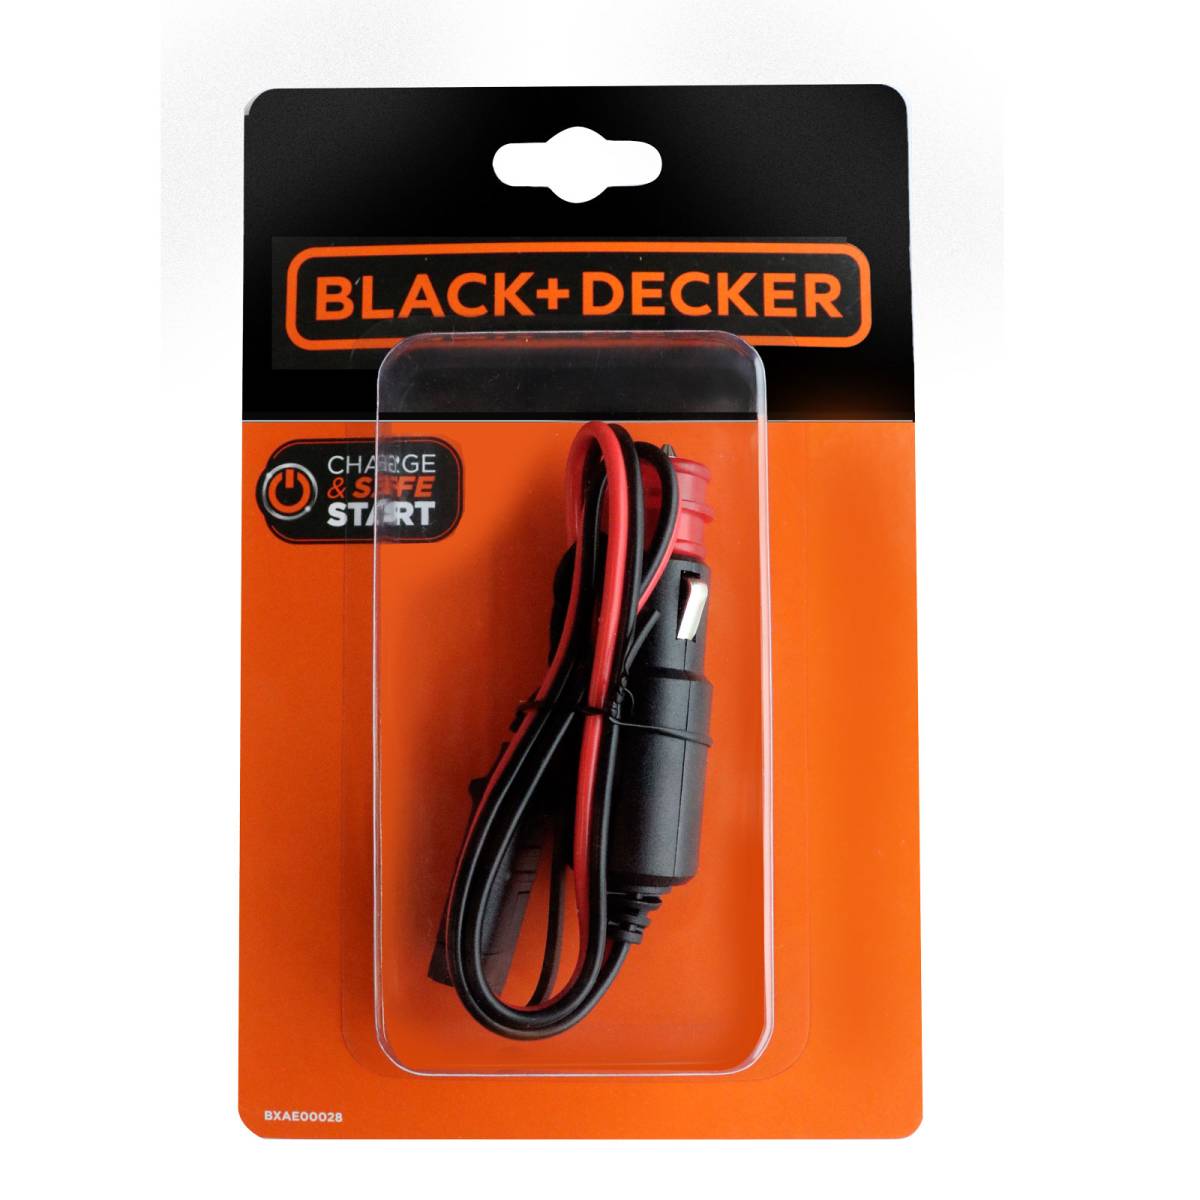 Black + Decker 12V Zigarettenanzünder Anschluss mit 8A Sicherung, Ladegeräte aller Art, Zubehör